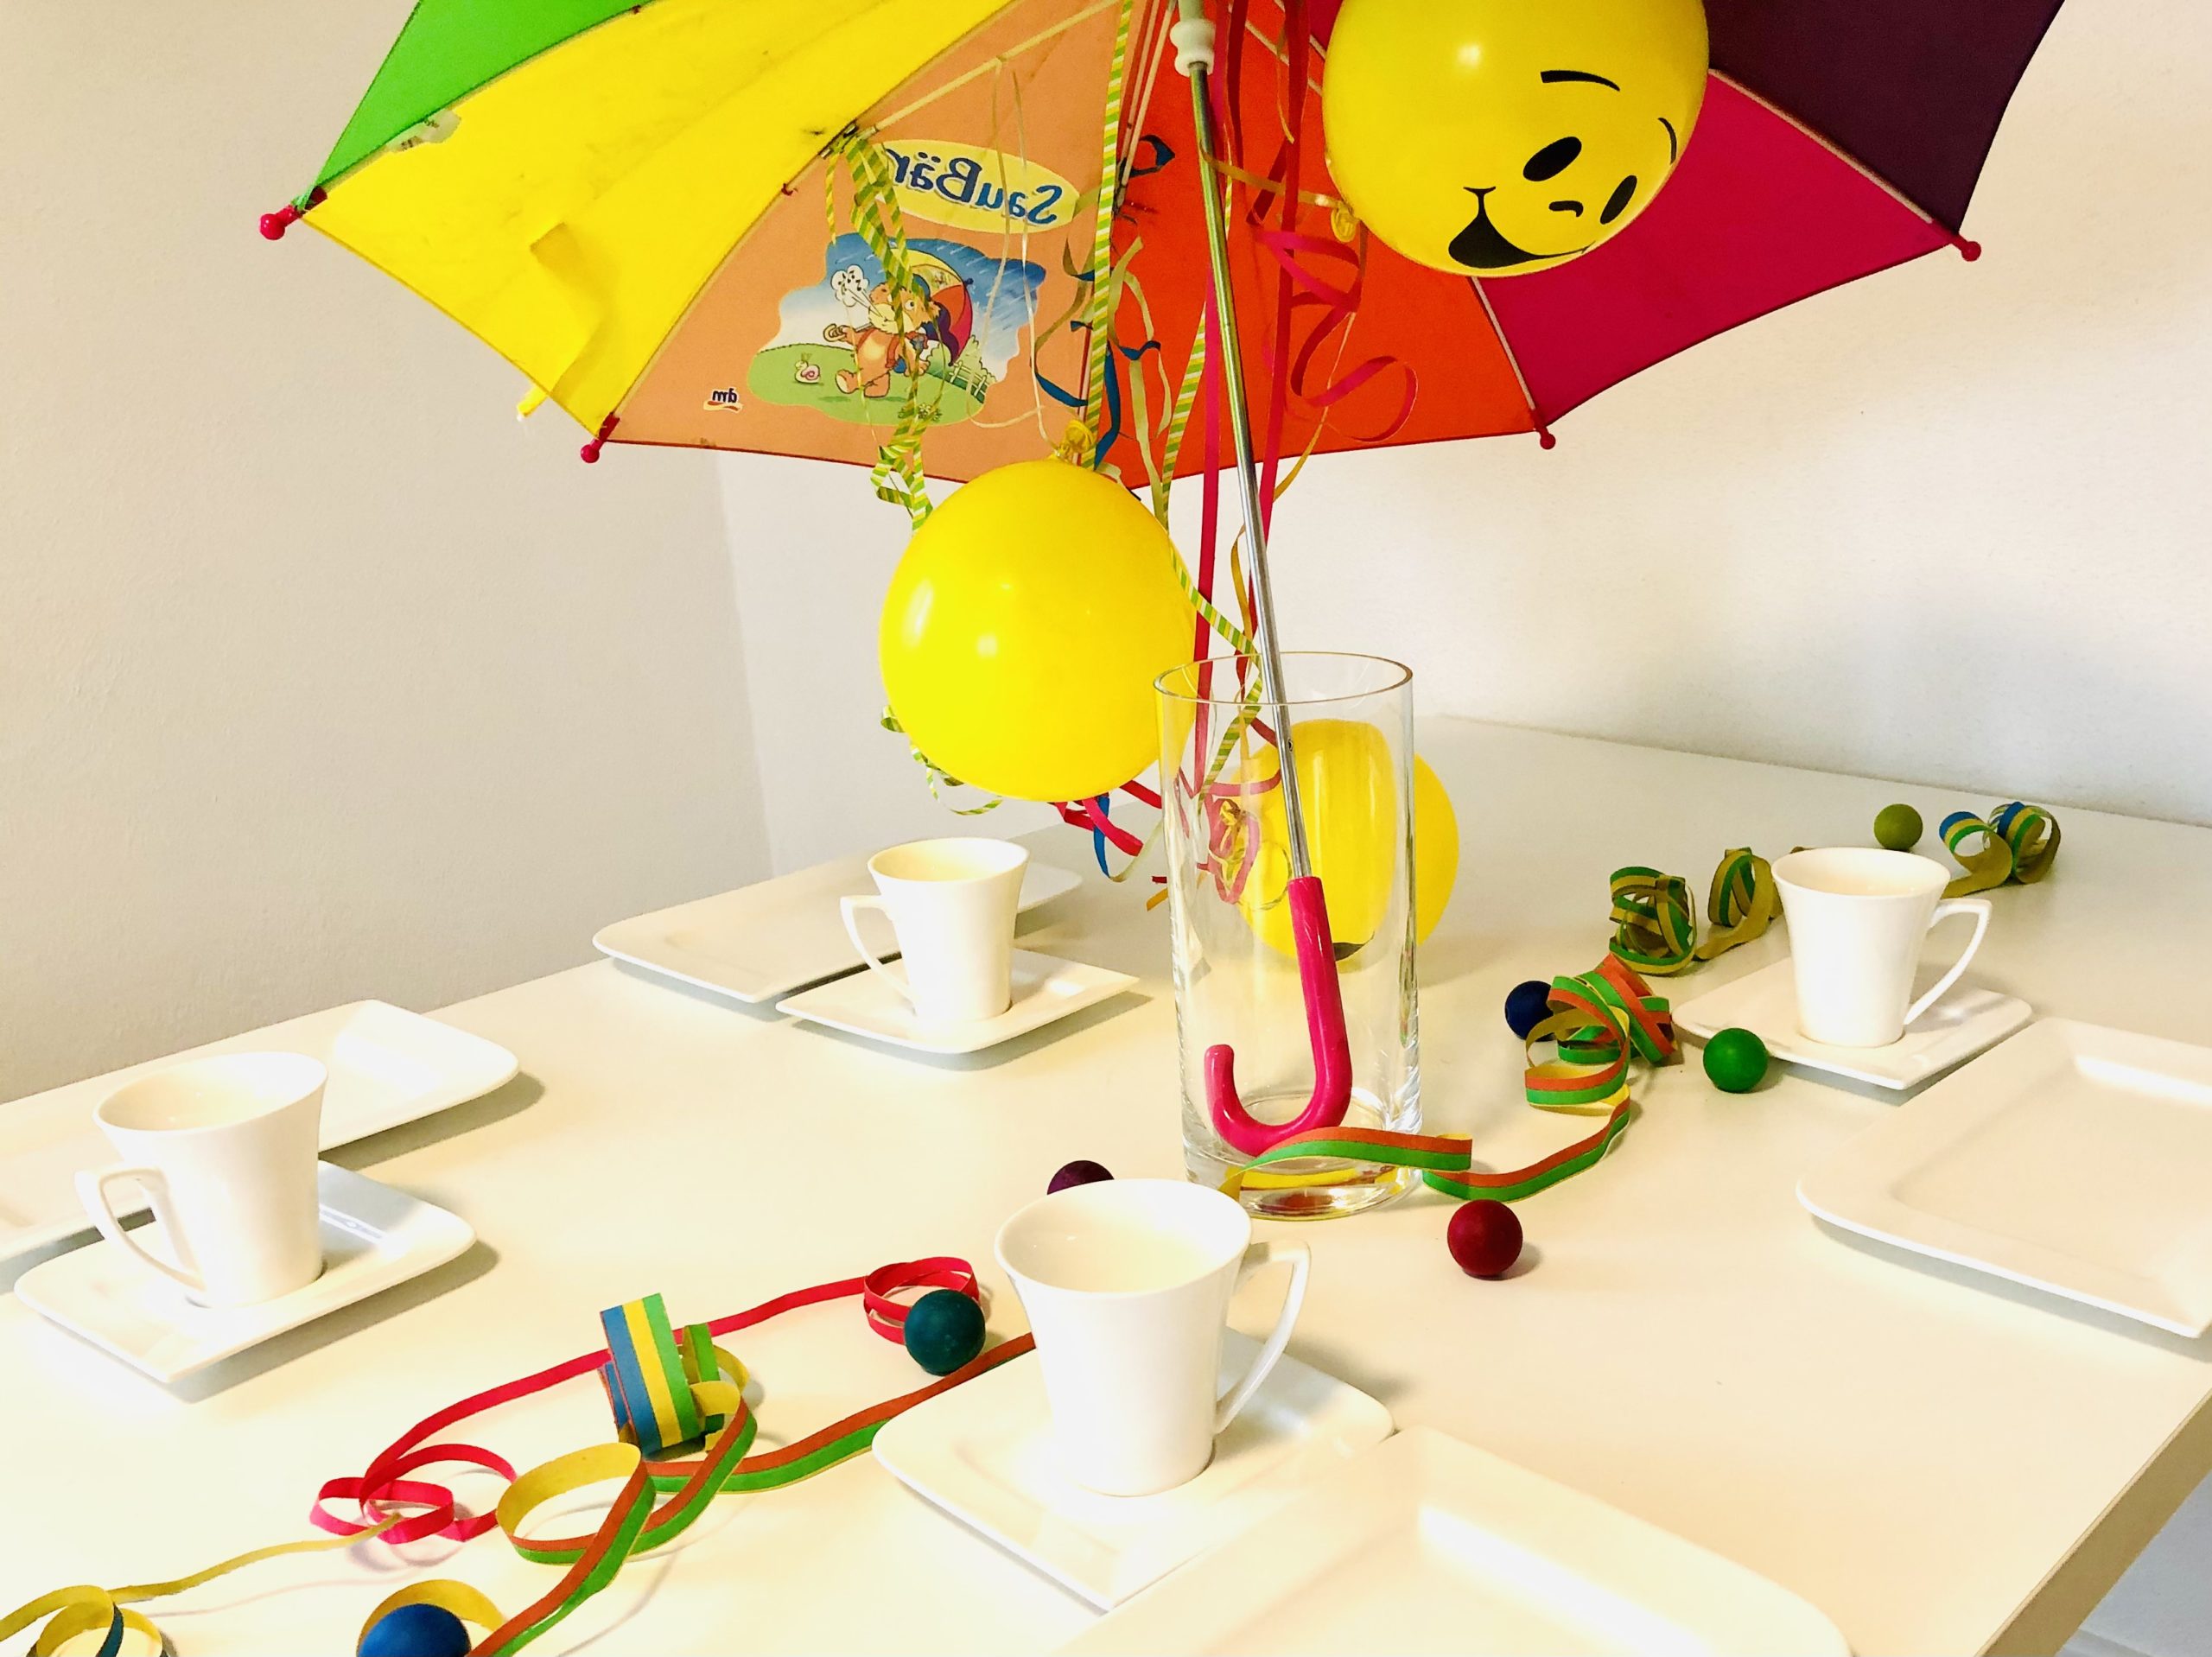 2. Bild zum Schritt 7 für die Kinder-Beschäftigung: 'Mit einem Luftballon auf dem Teller und einer Luftschlange habt...'